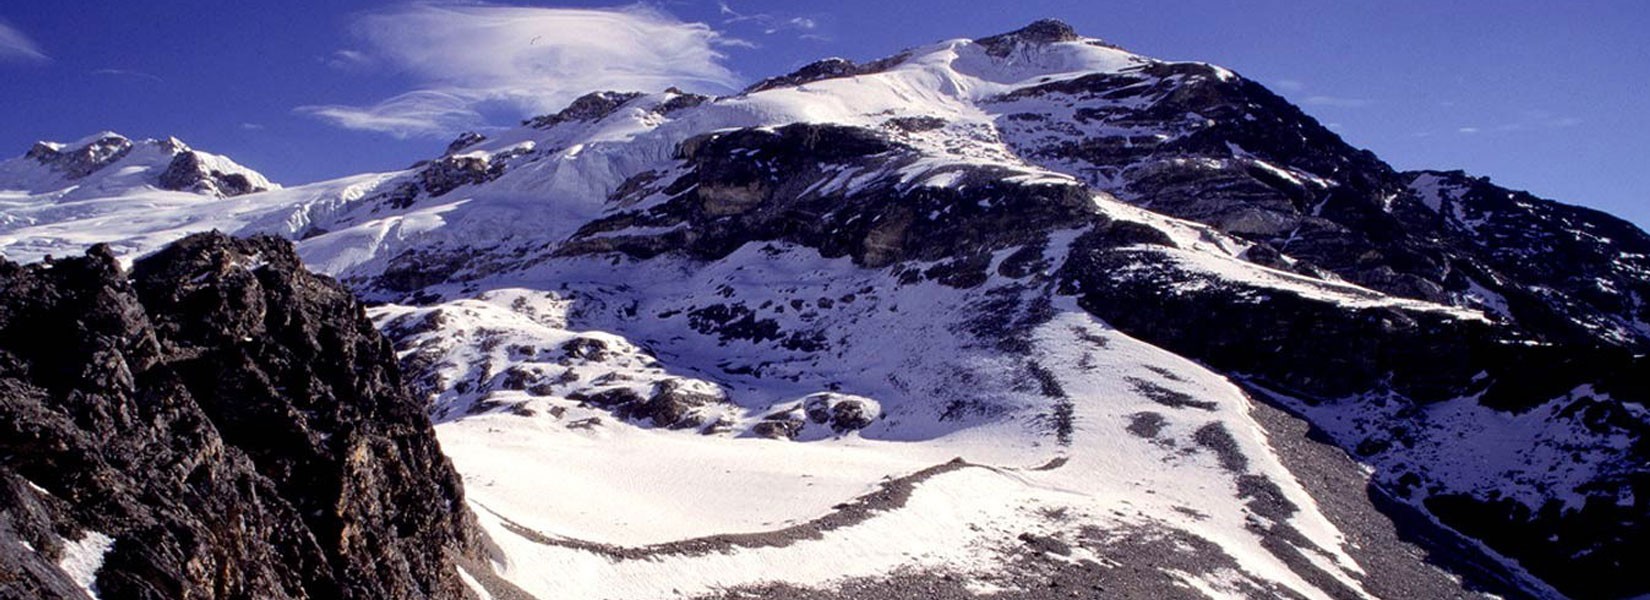 Yala Peak in the Langtang Valley